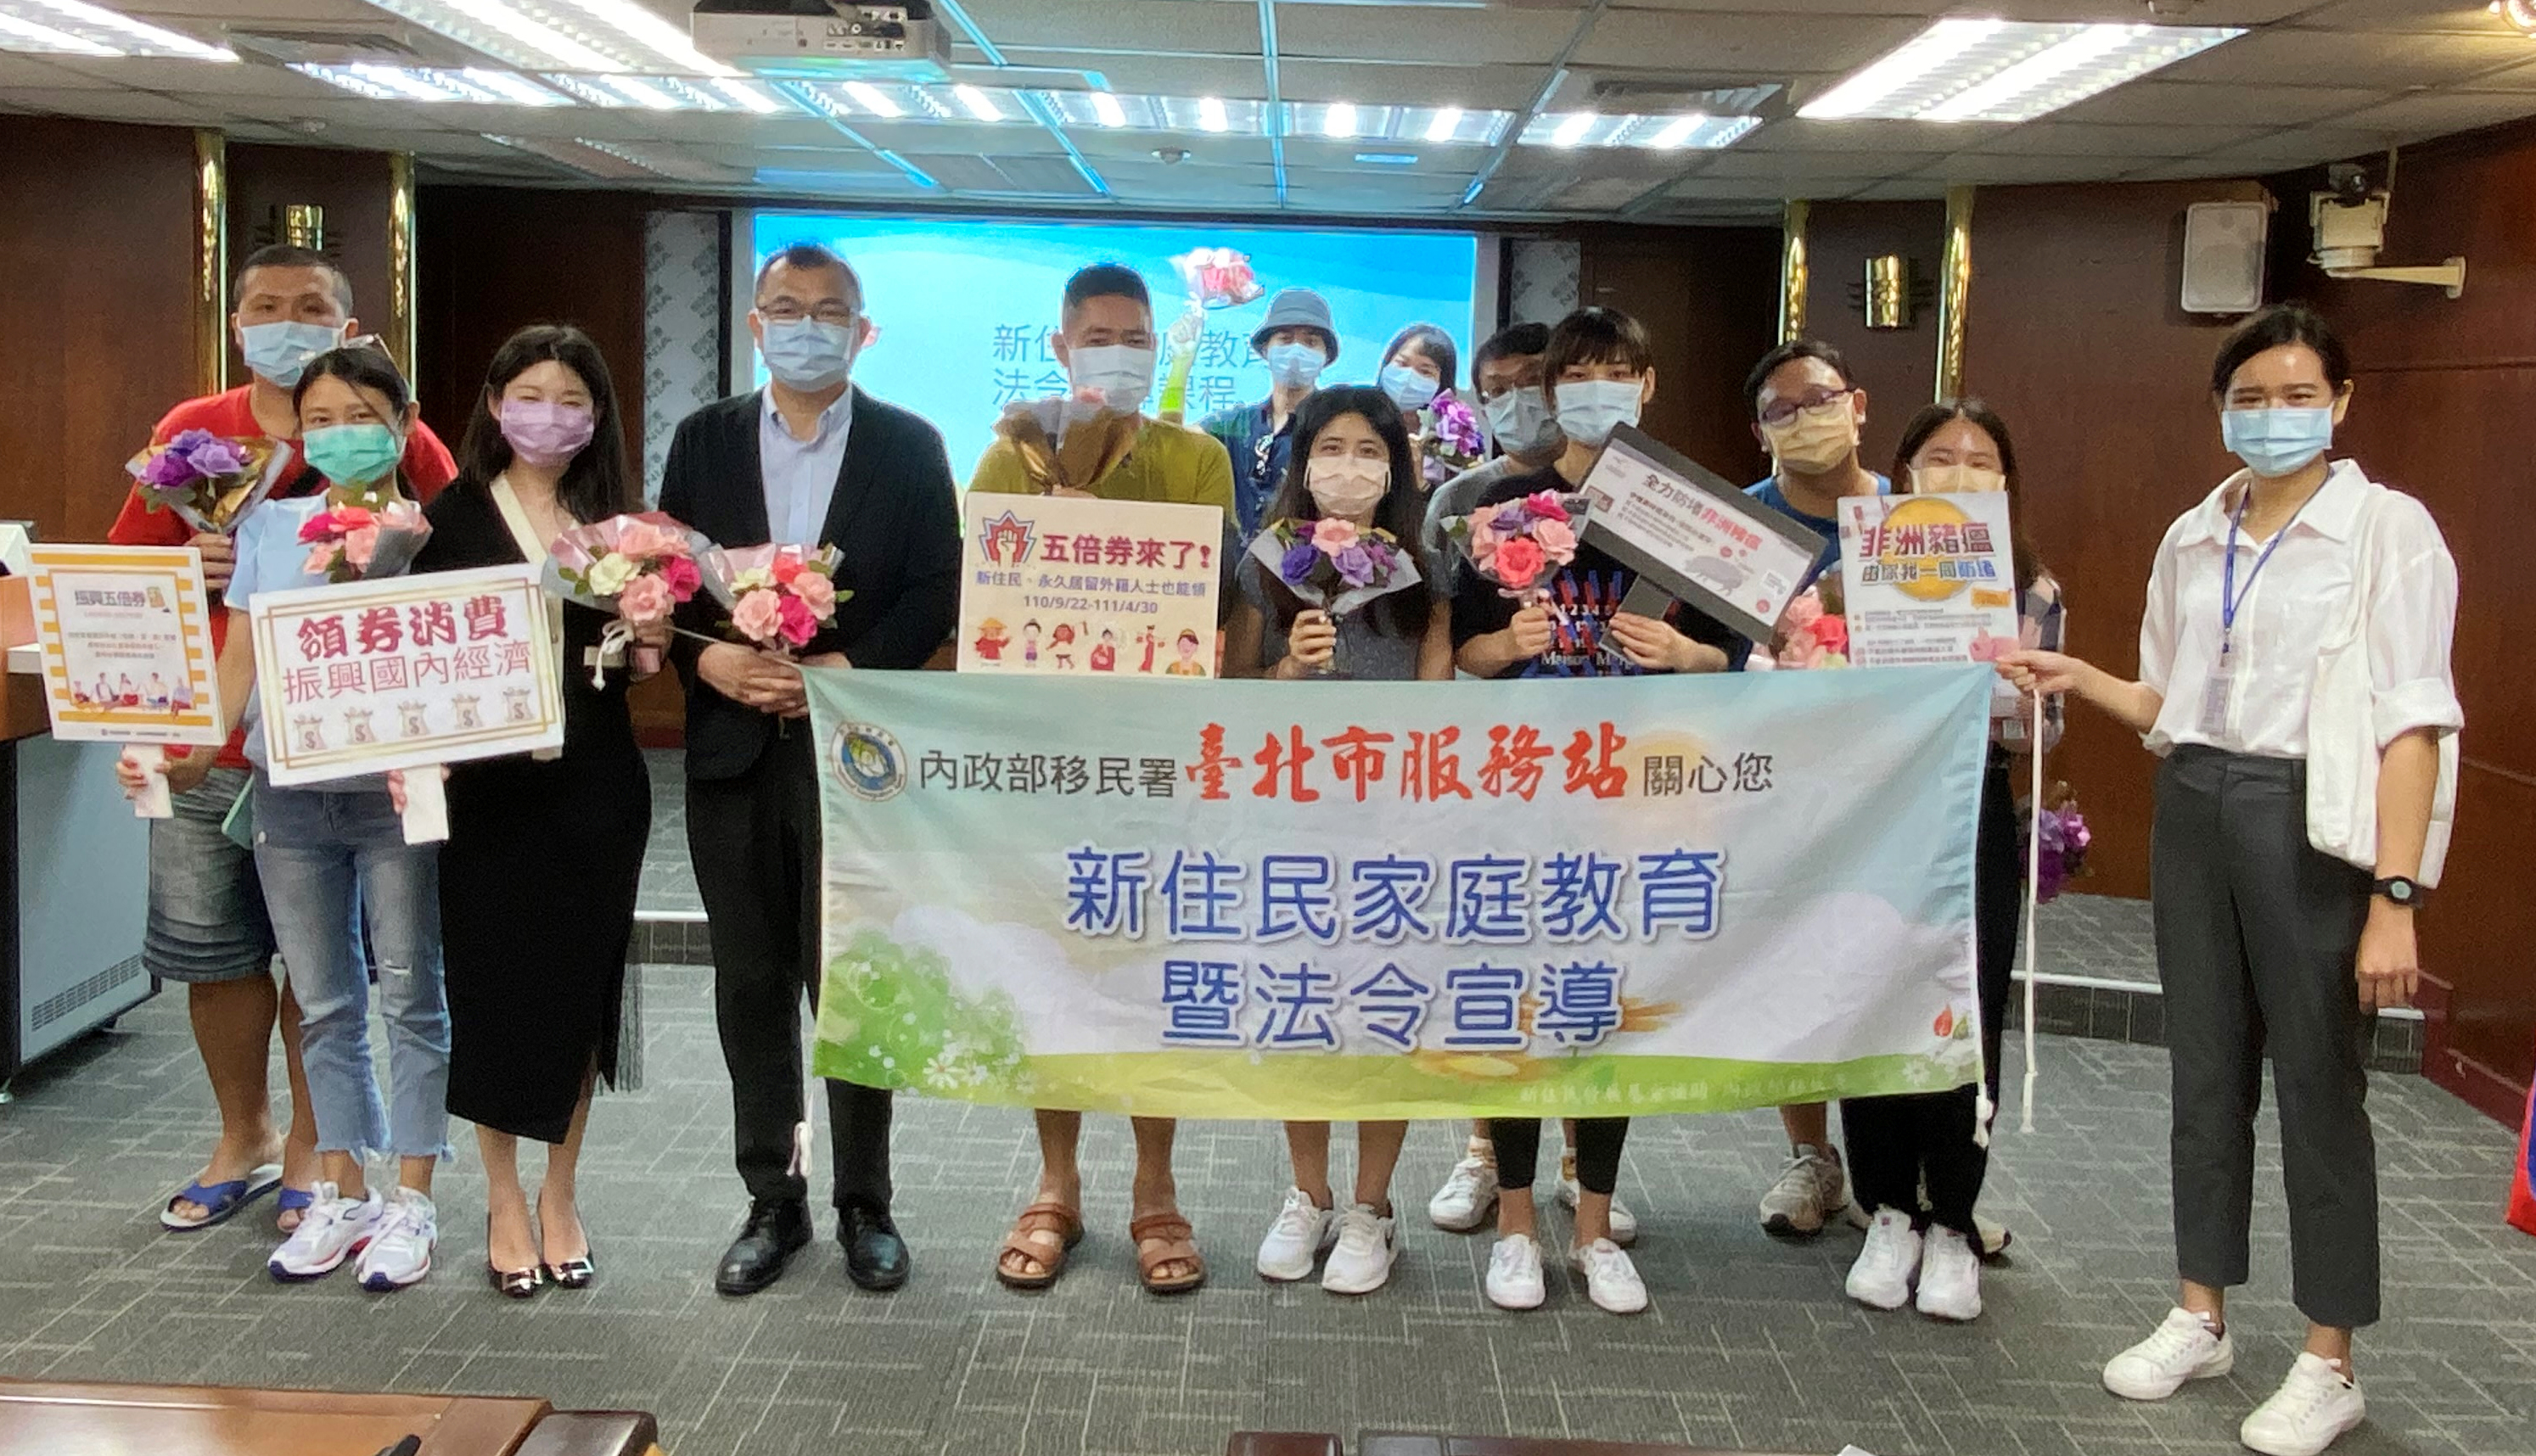 Trạm Phục vụ của Sở Di dân tại thành phố Đài Bắc khuyến khích chị em di dân mới dũng cảm theo đuổi ước mơ. (Nguồn ảnh: Trạm Phục vụ thuộc Đội Nghiệp vụ khu vực phía Bắc của Sở Di dân tại thành phố Đài Bắc)